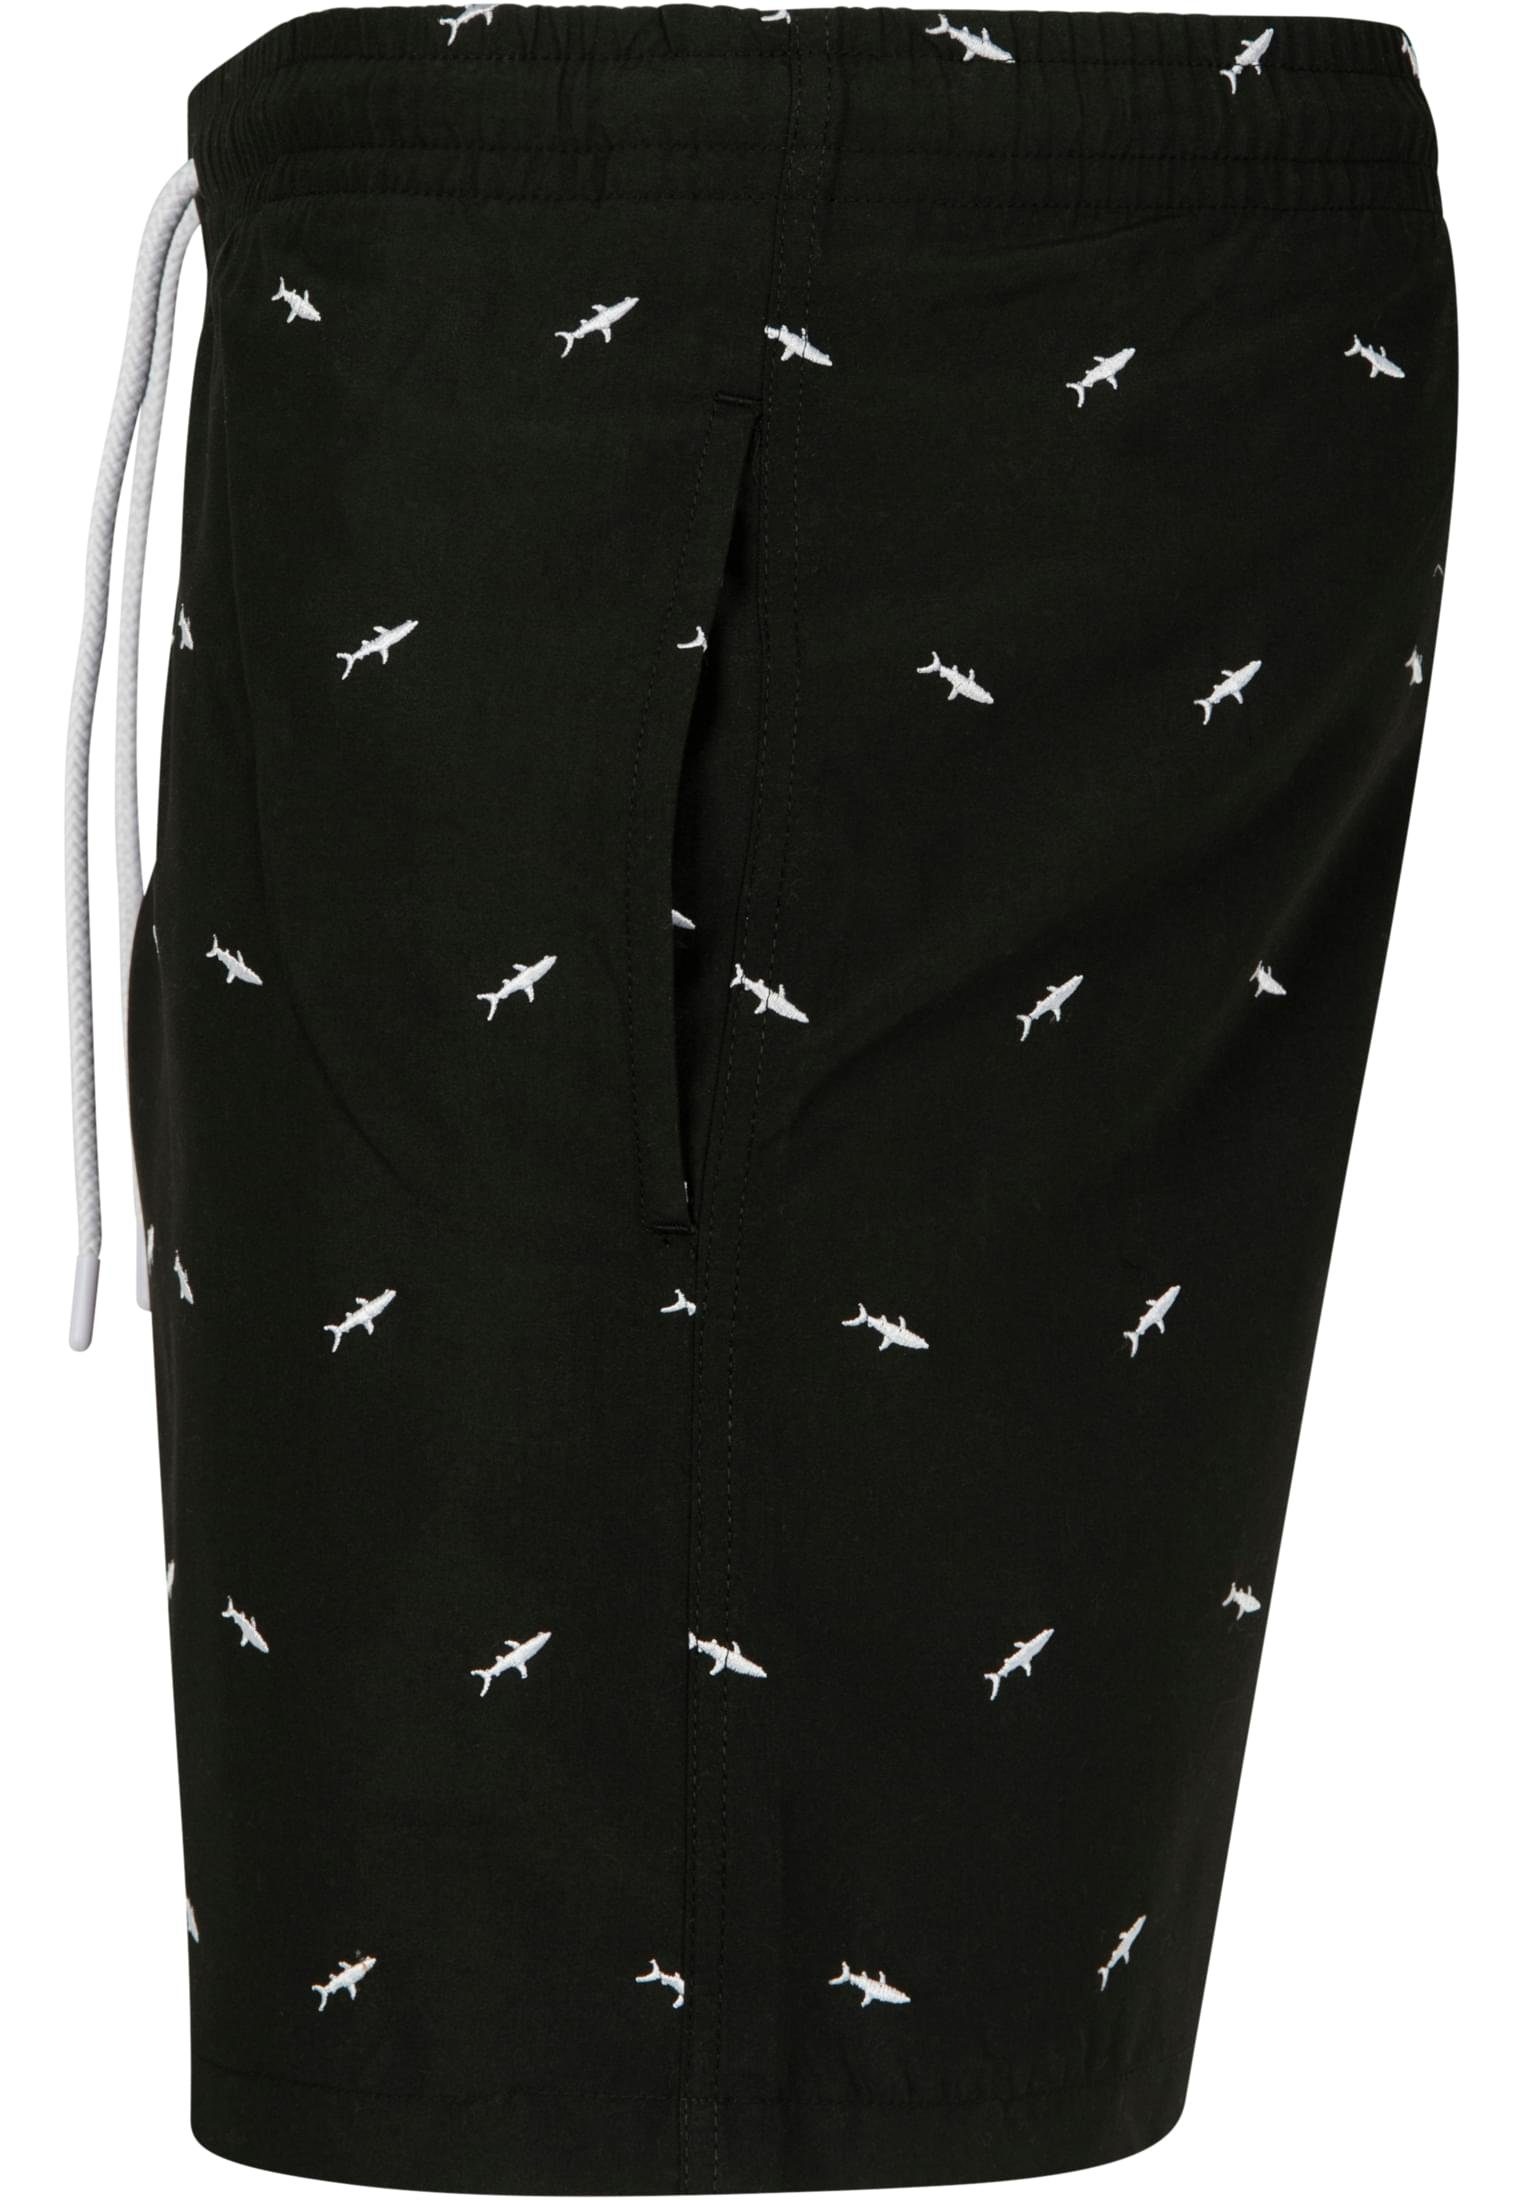 CLASSICS Swim URBAN Badeshorts Shorts Herren shark/black/white Embroidery